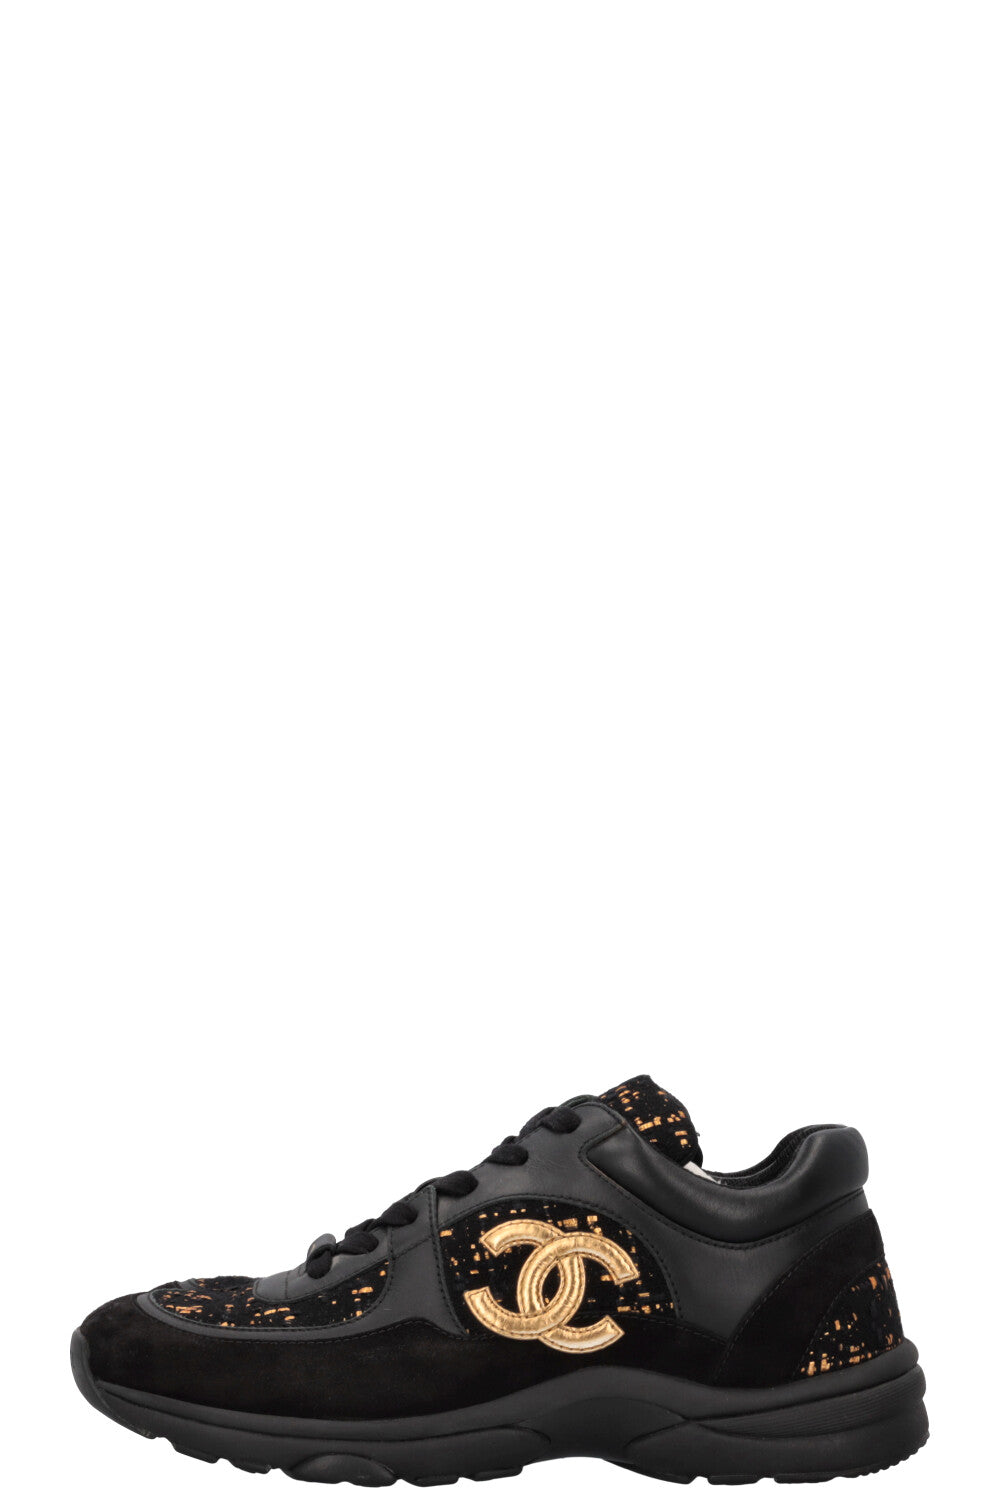 CHANEL Tennis Sneakers Tweed Black Gold